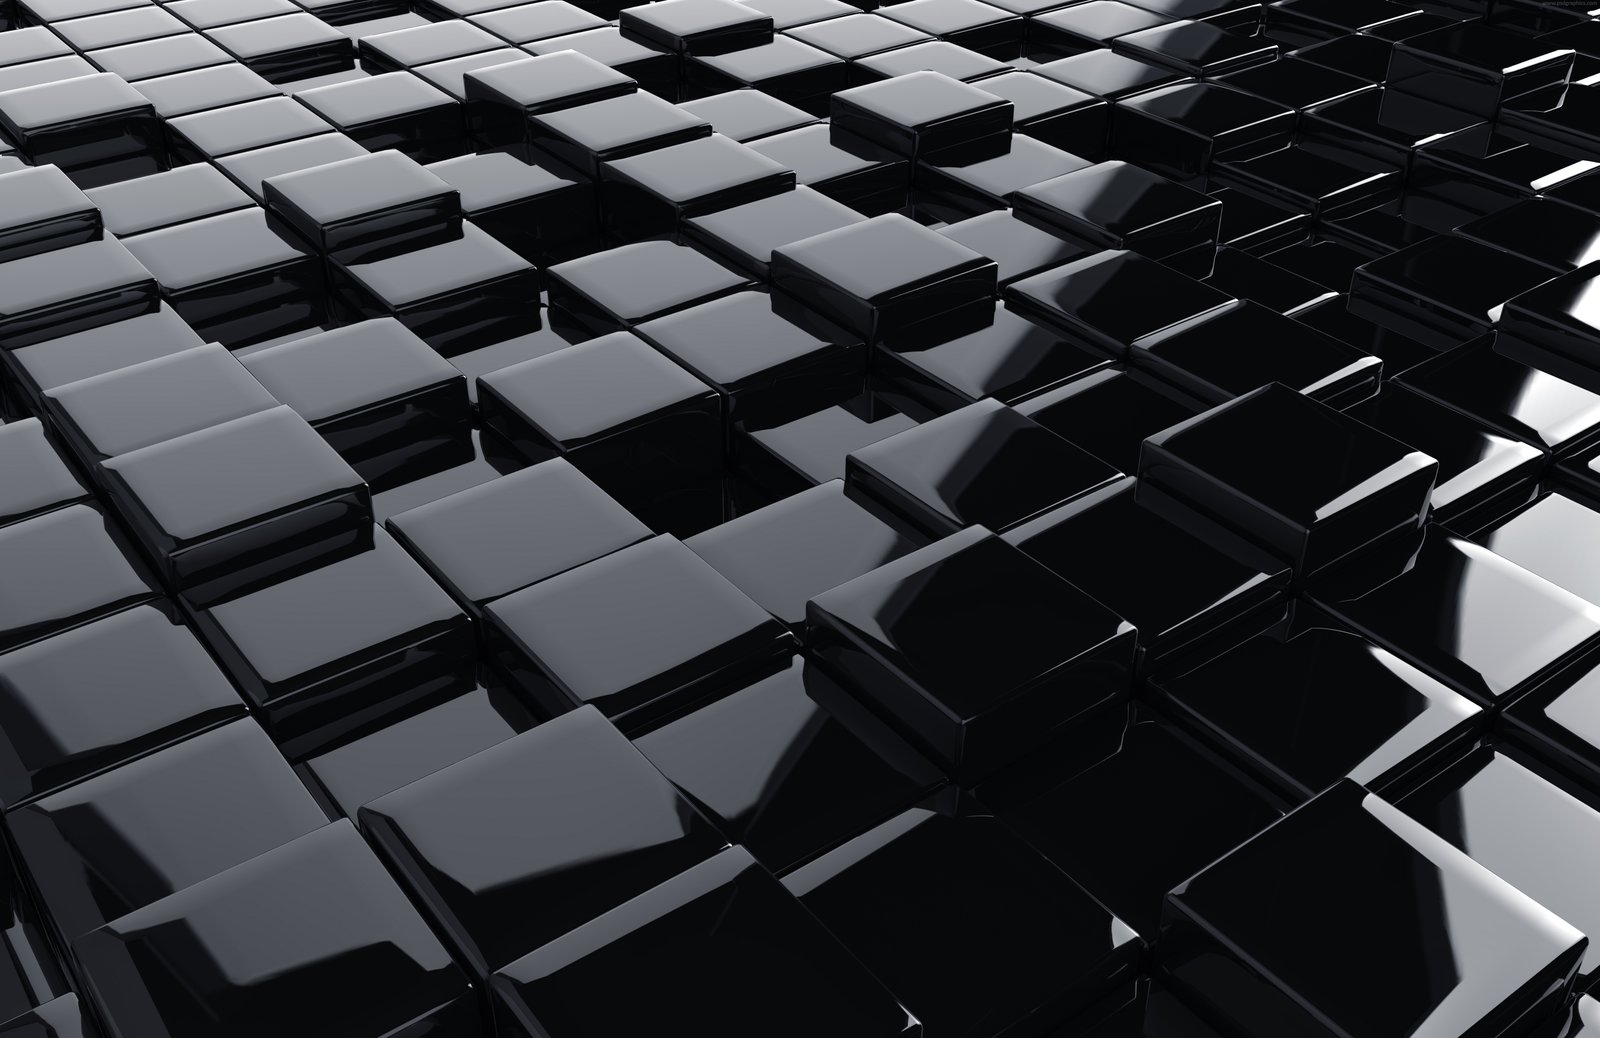 Hình nền 3D cube màu đen sẽ làm bất cứ ai cũng bị cuốn hút. Được tạo nên từ những khối lập phương chất lượng cao, đây là một hình ảnh độc đáo và đẹp mắt đến từ kỹ thuật CGI. Làm cho màn hình của bạn trở nên rực rỡ và táo bạo với hình ảnh này.